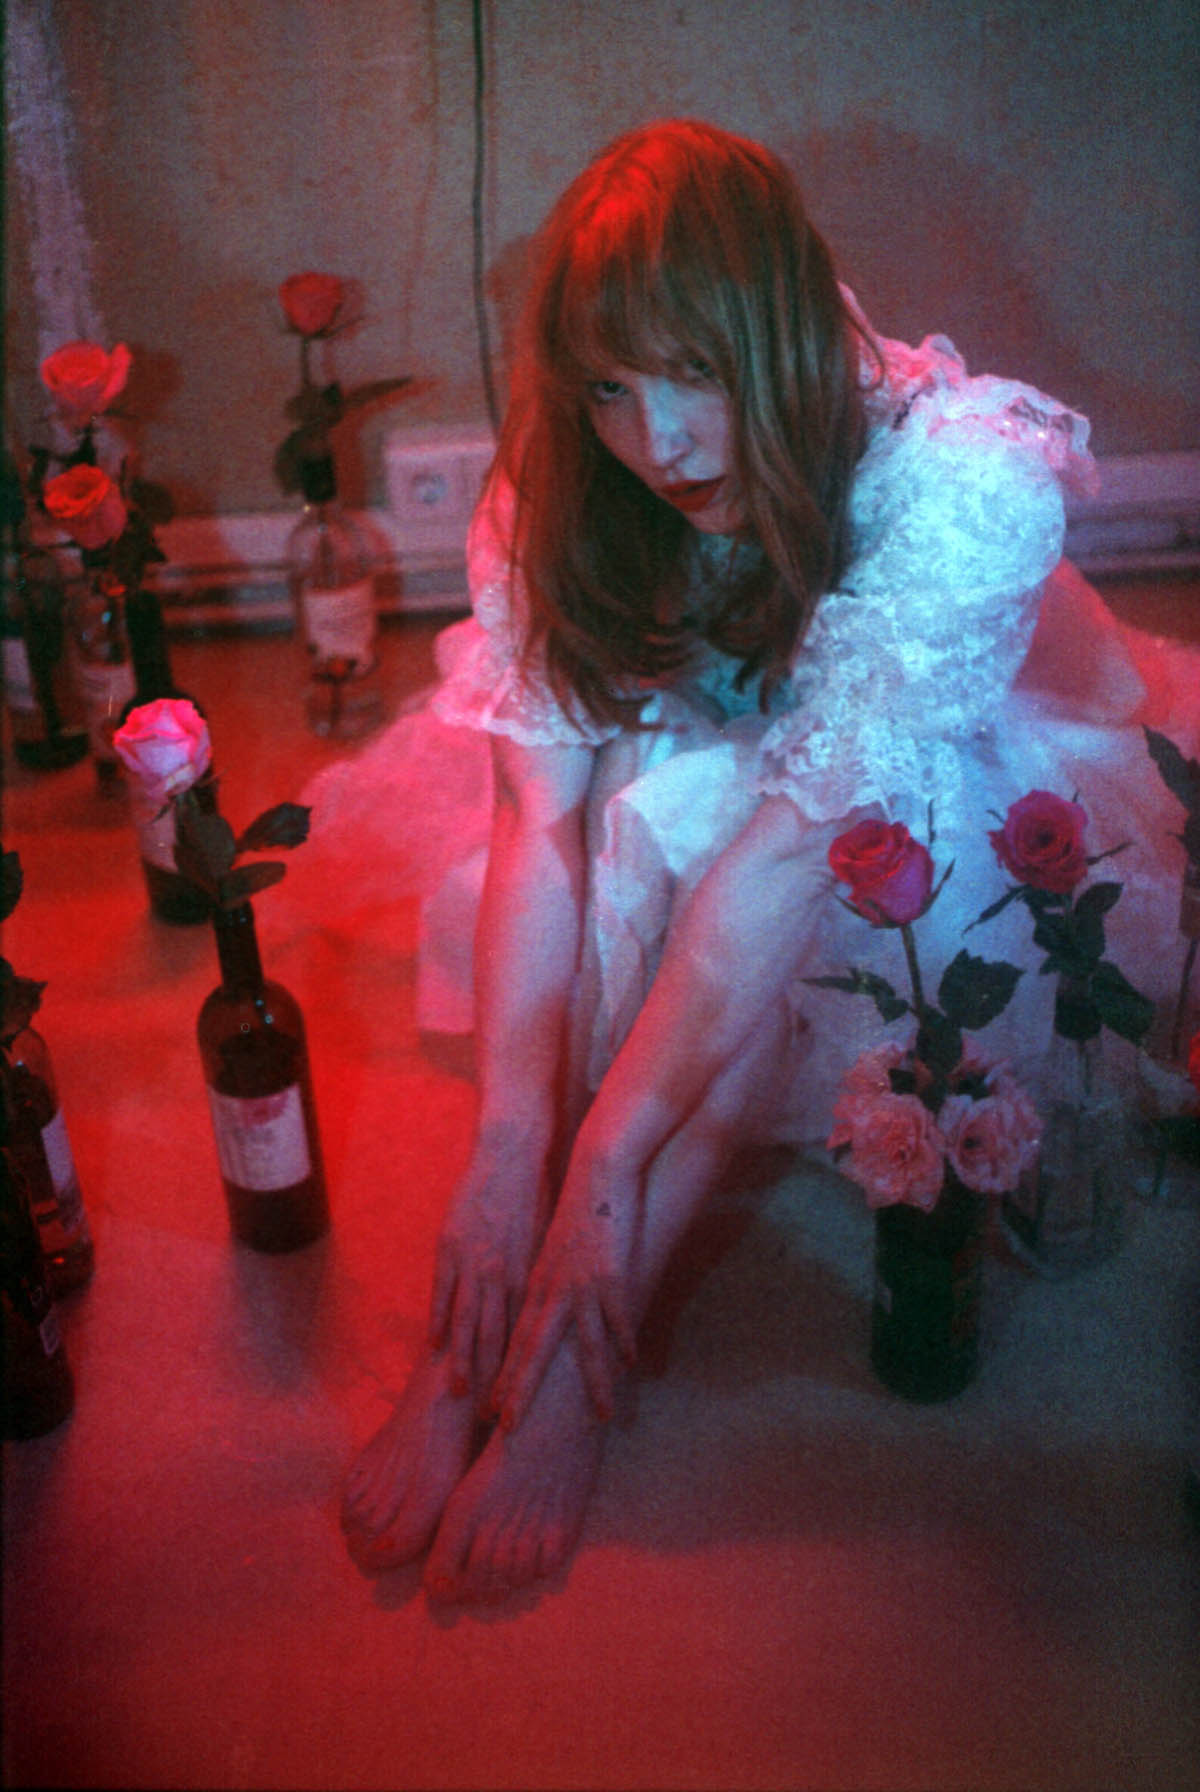 Weiße Frau mit roten Haaren und einem weißen Rüschenkleid sitzt nach vorn gebeugt auf dem Boden. Ihre Beine sind angewinkelt, sie berührt mit ihren Händen ihre nackten Füße. Sie schaut in die Kamera. Um sie herum stehen einzelne Rosen in mehreren Weinflaschen.